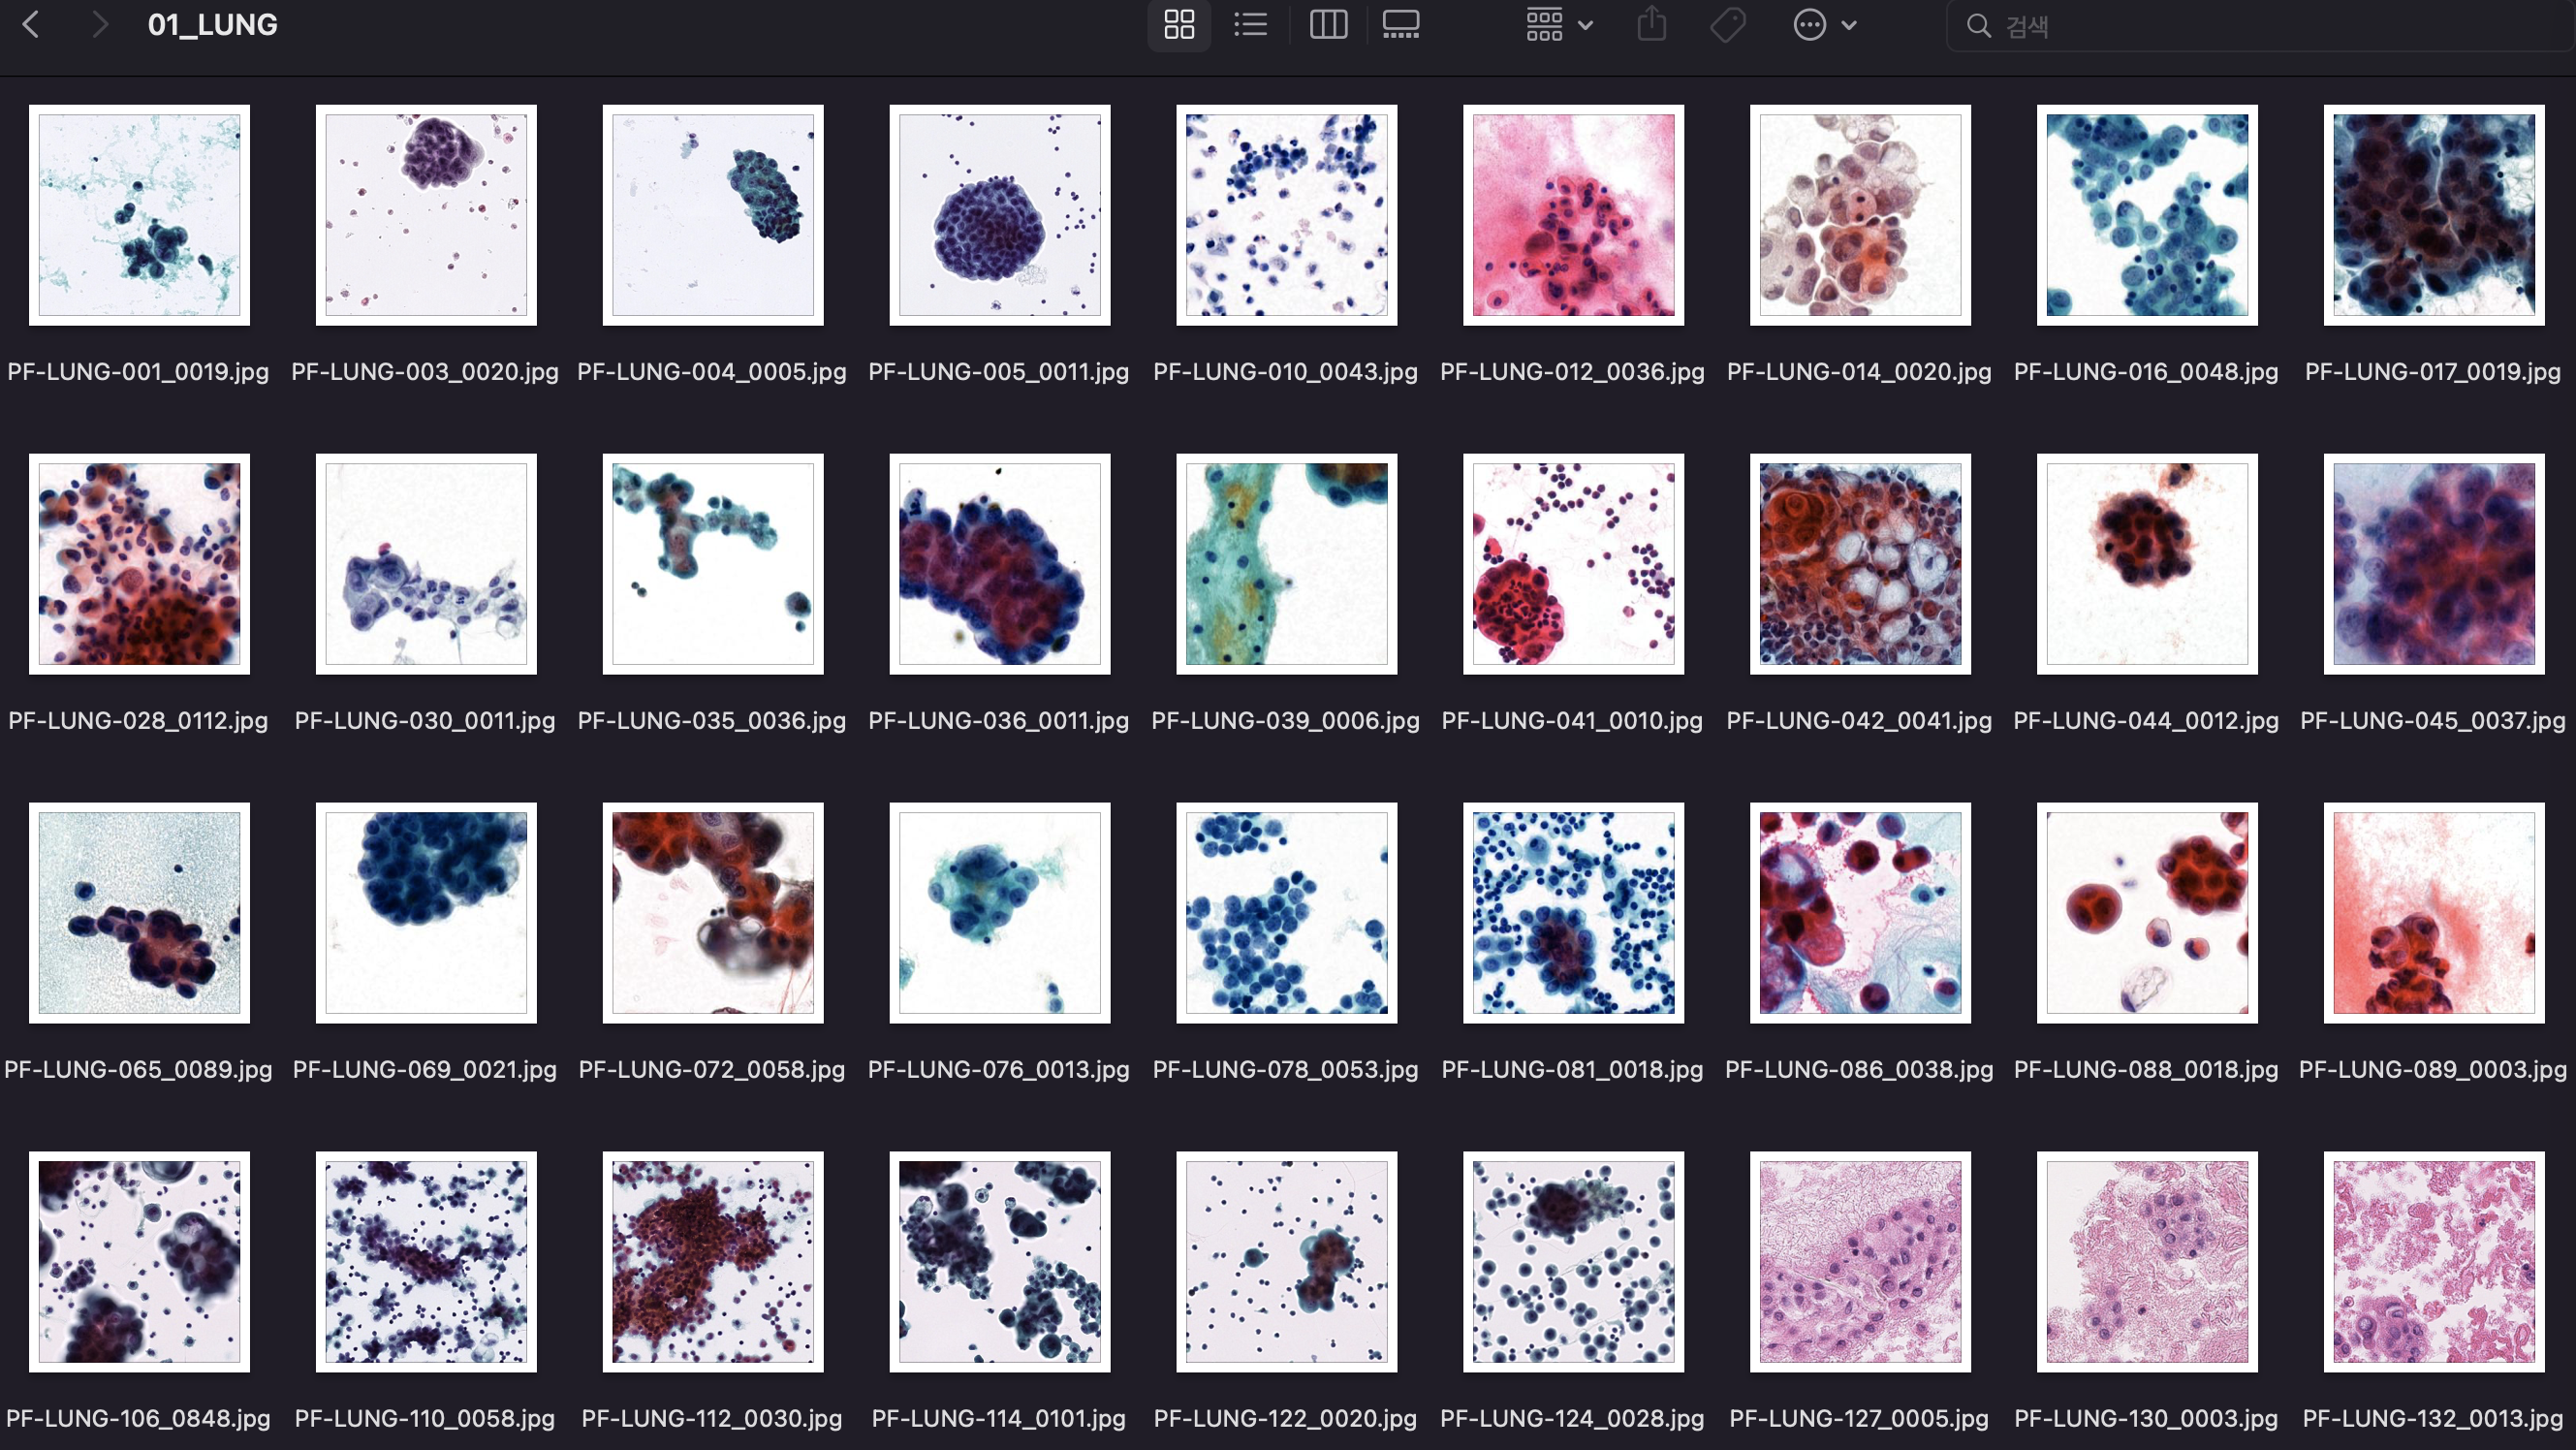 체액 내 세포검사 이미지-데이터 포맷_1_jpg + csv file (어노테이션파일)